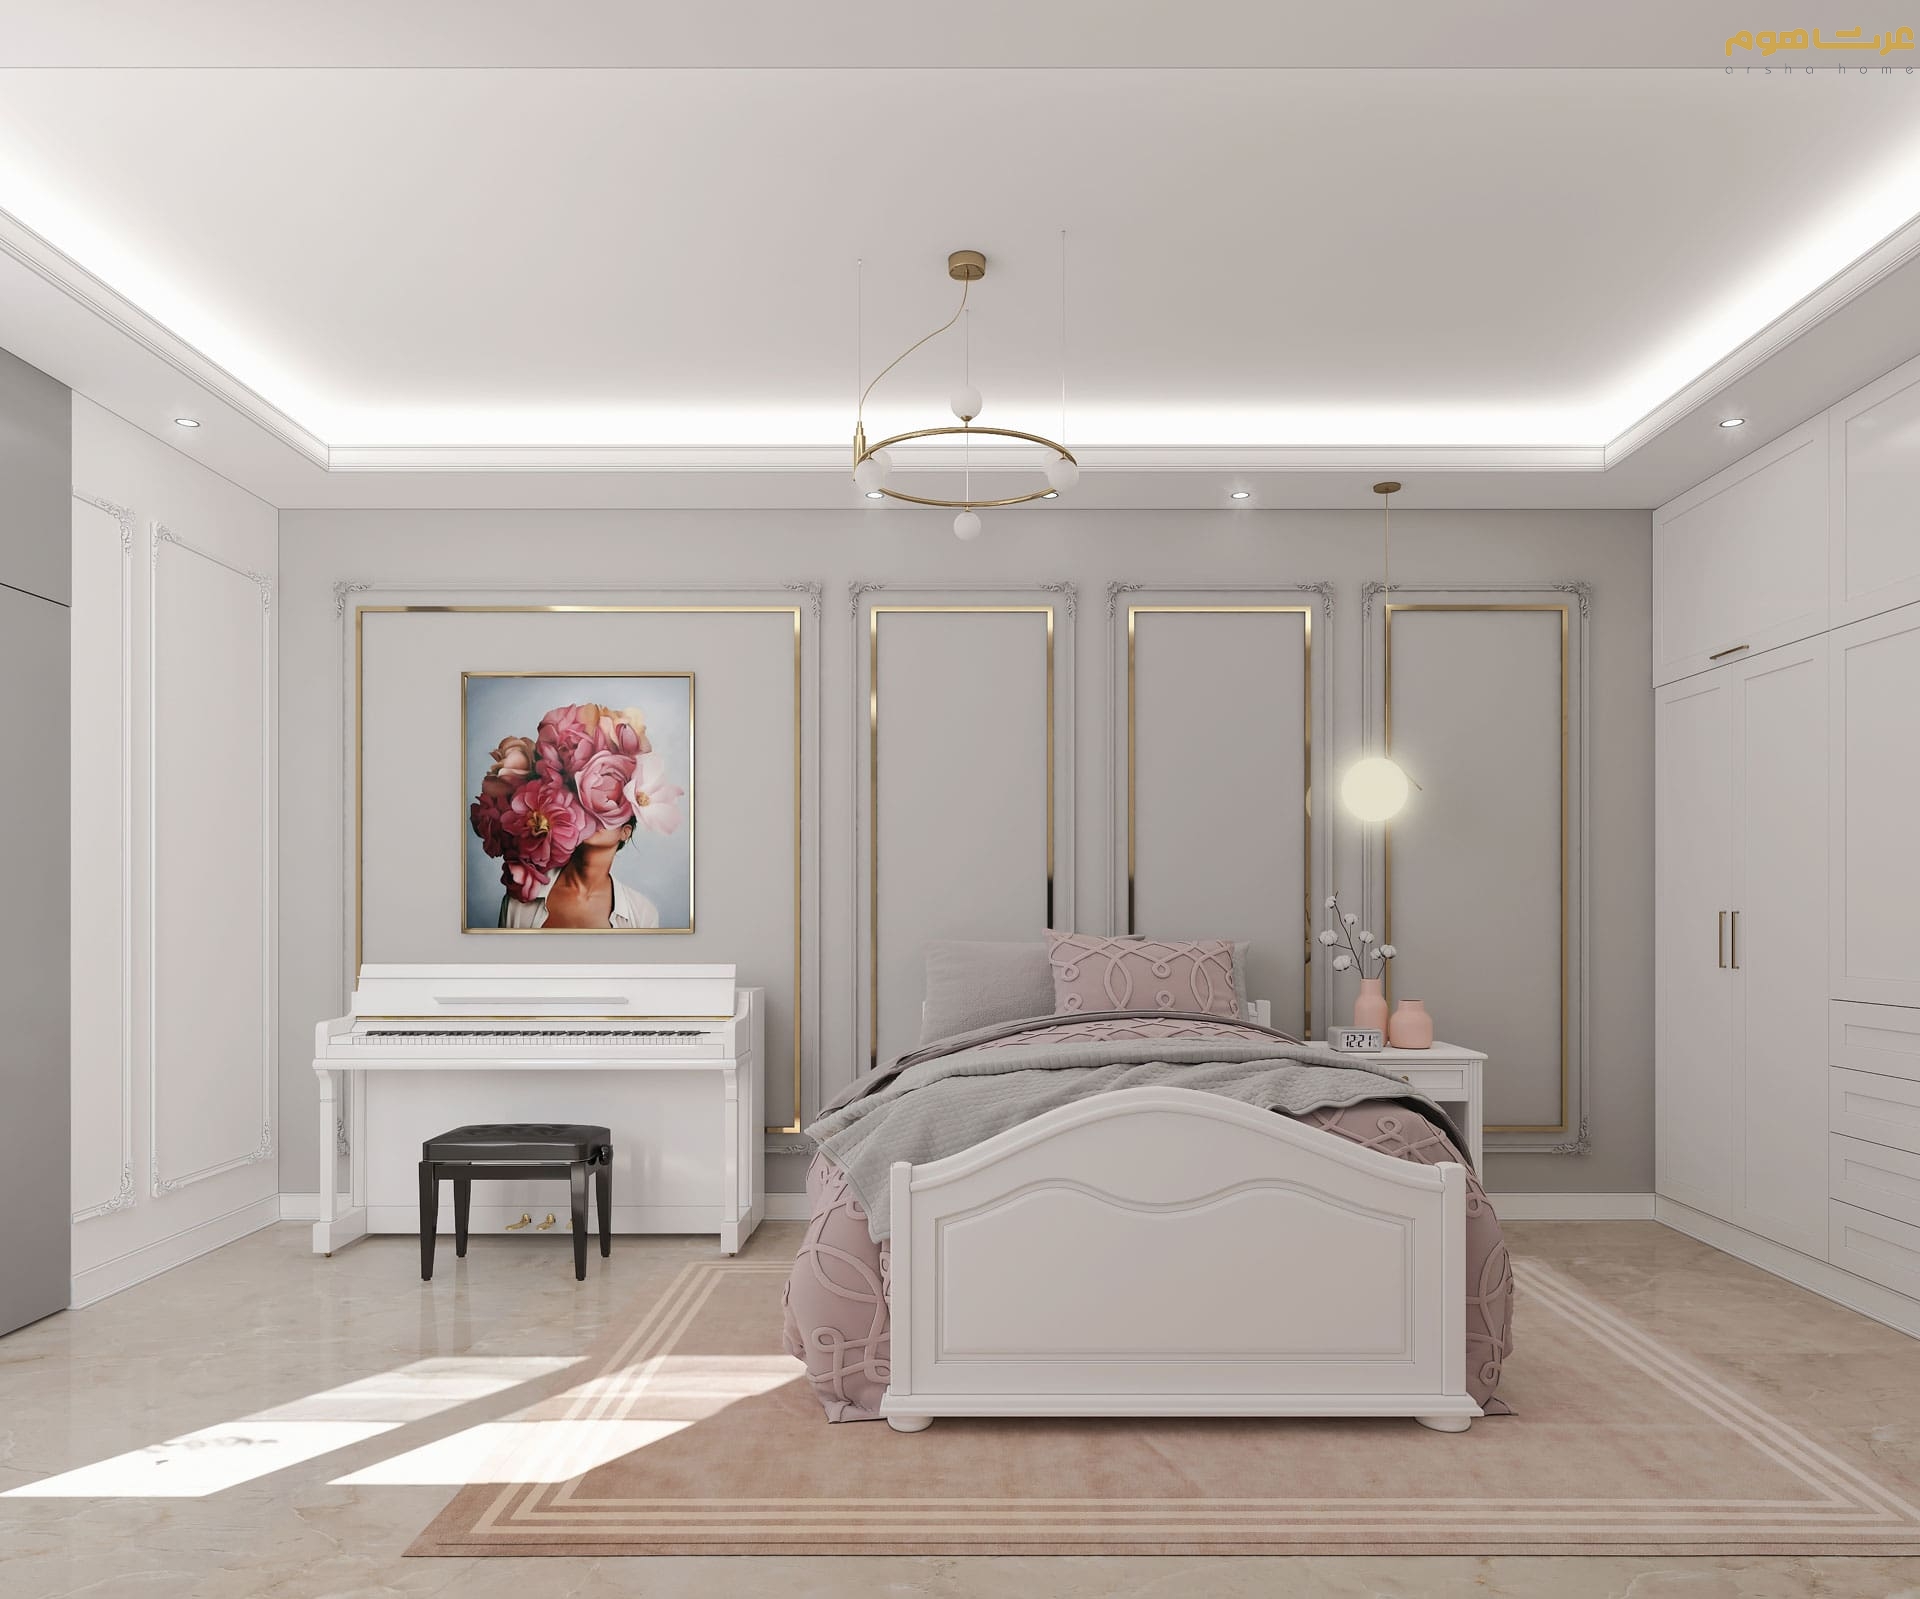 طراحی داخلی اتاق خواب دخترانه نیروهوایی به سبک نئوکلاسیک